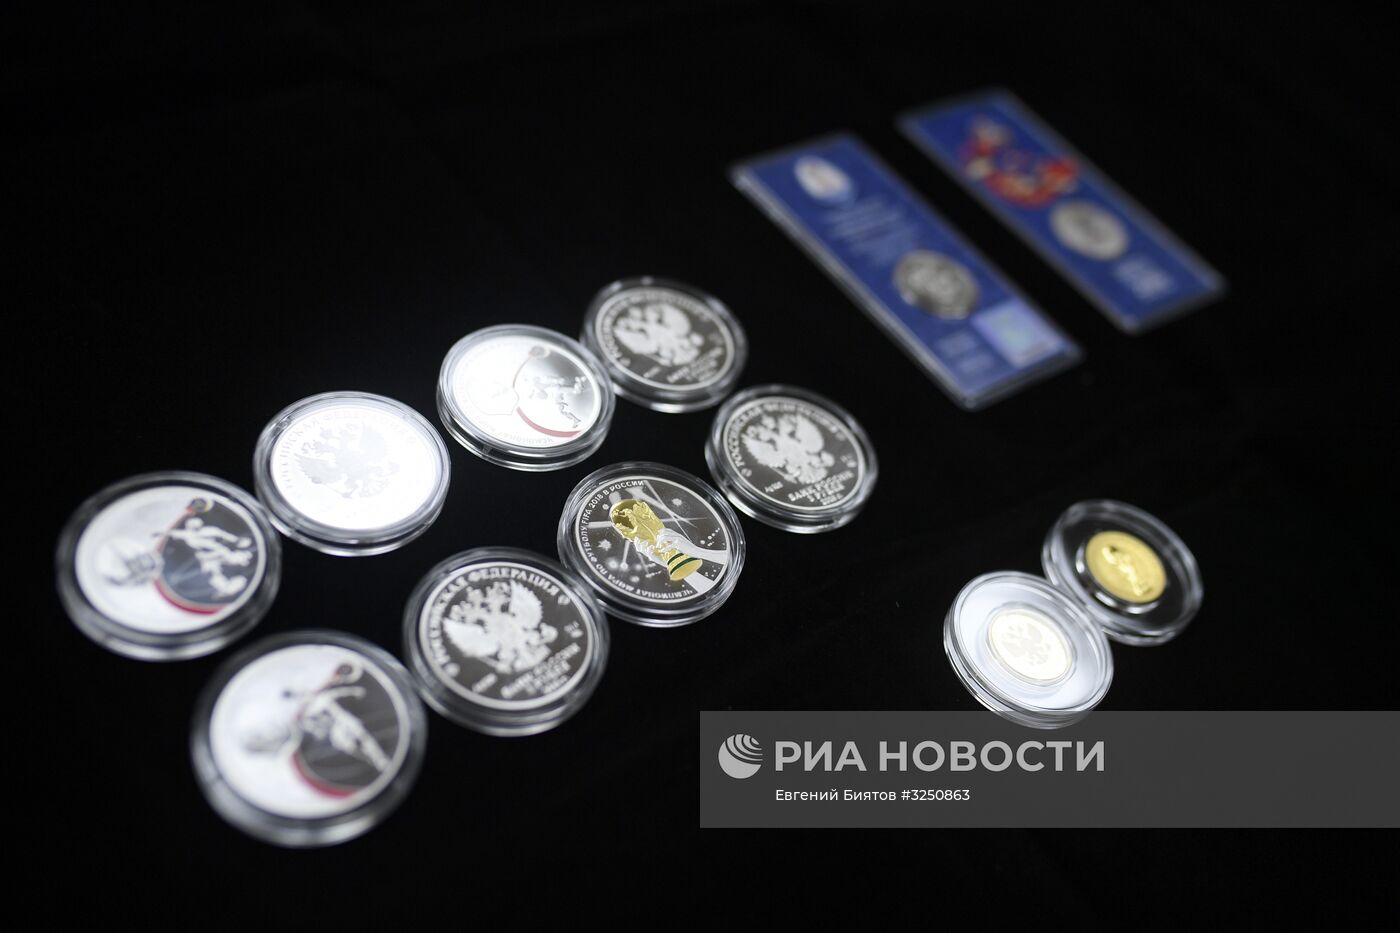 Презентация памятных монет, посвященных Чемпионату мира по футболу FIFA 2018 года